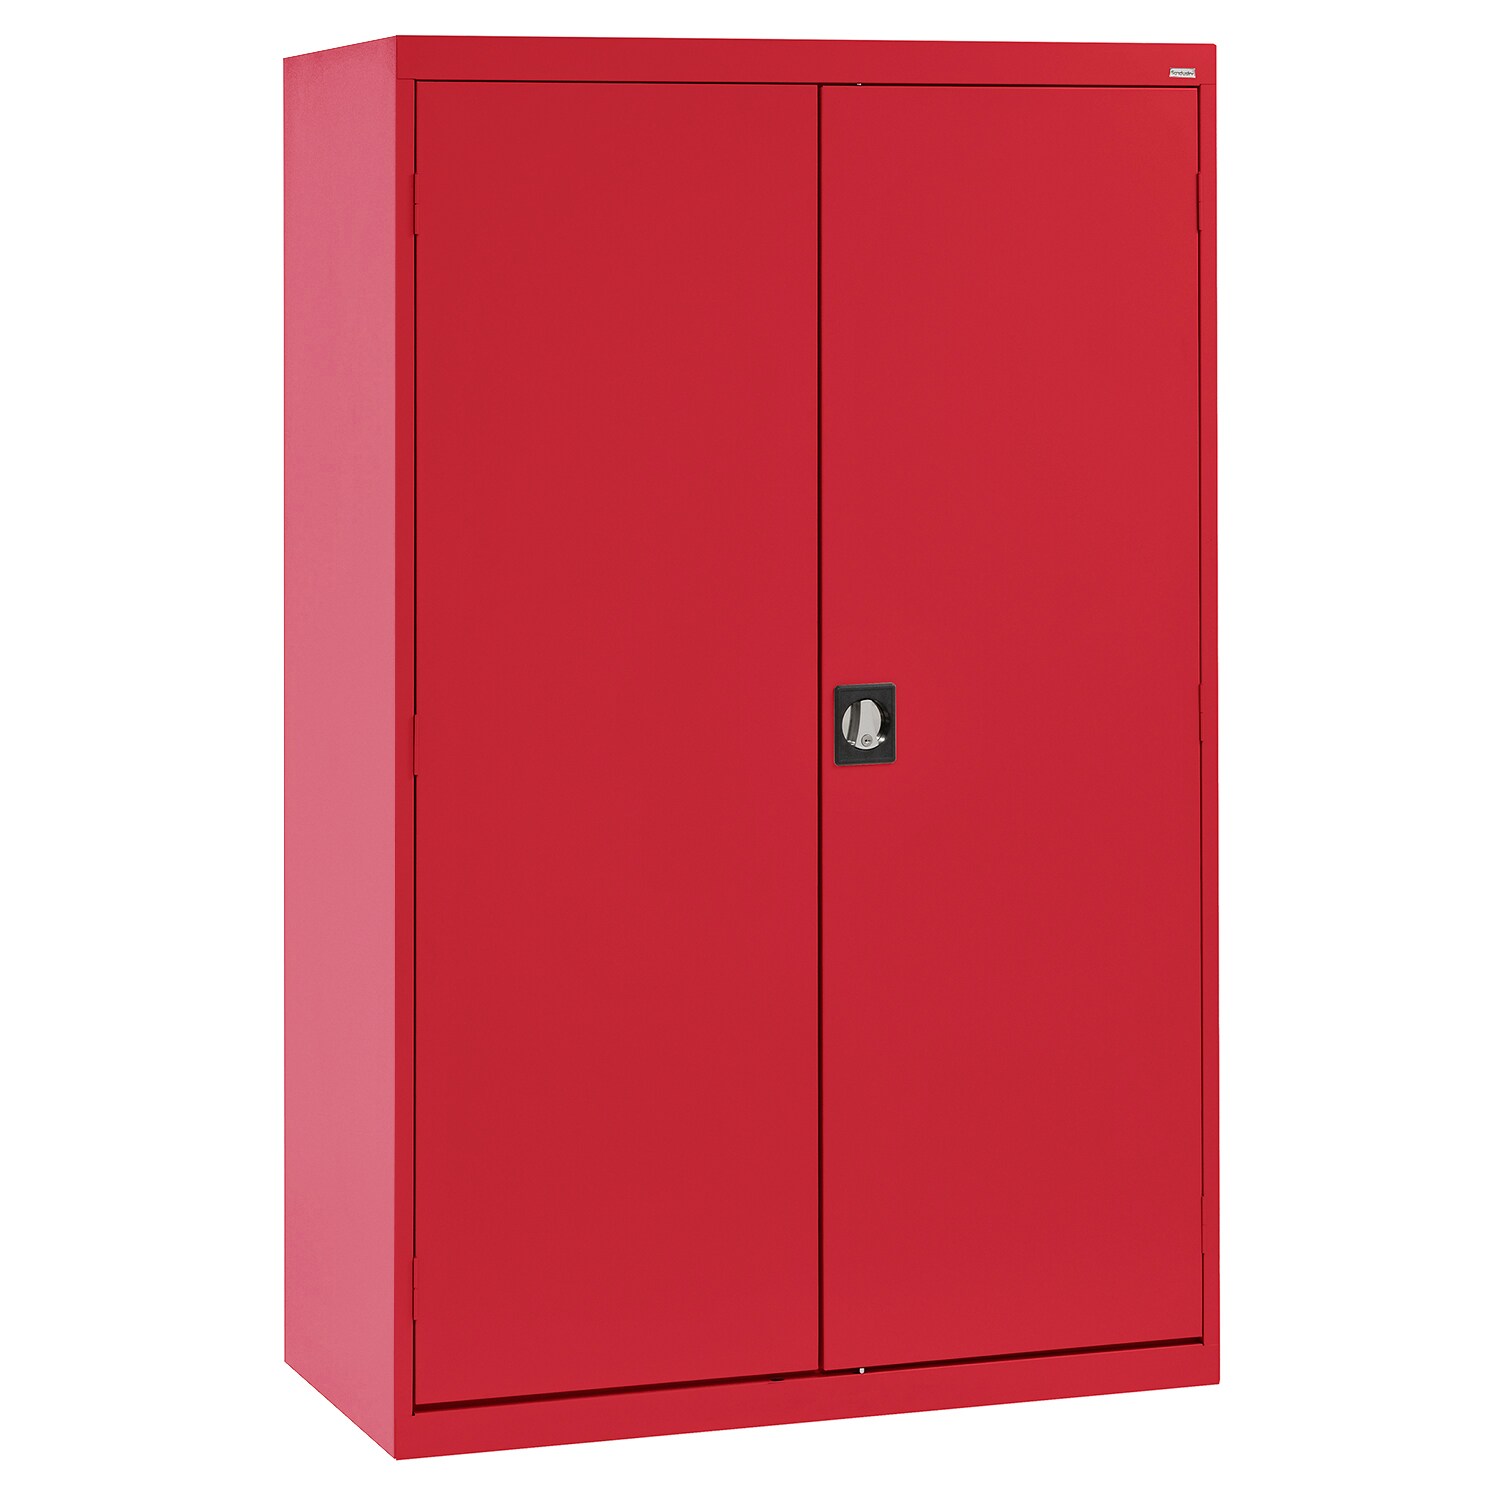 Steel Freestanding Garage Cabinet in Red (46-in W x 72-in H x 24-in D) | - Sandusky EACR462472-01